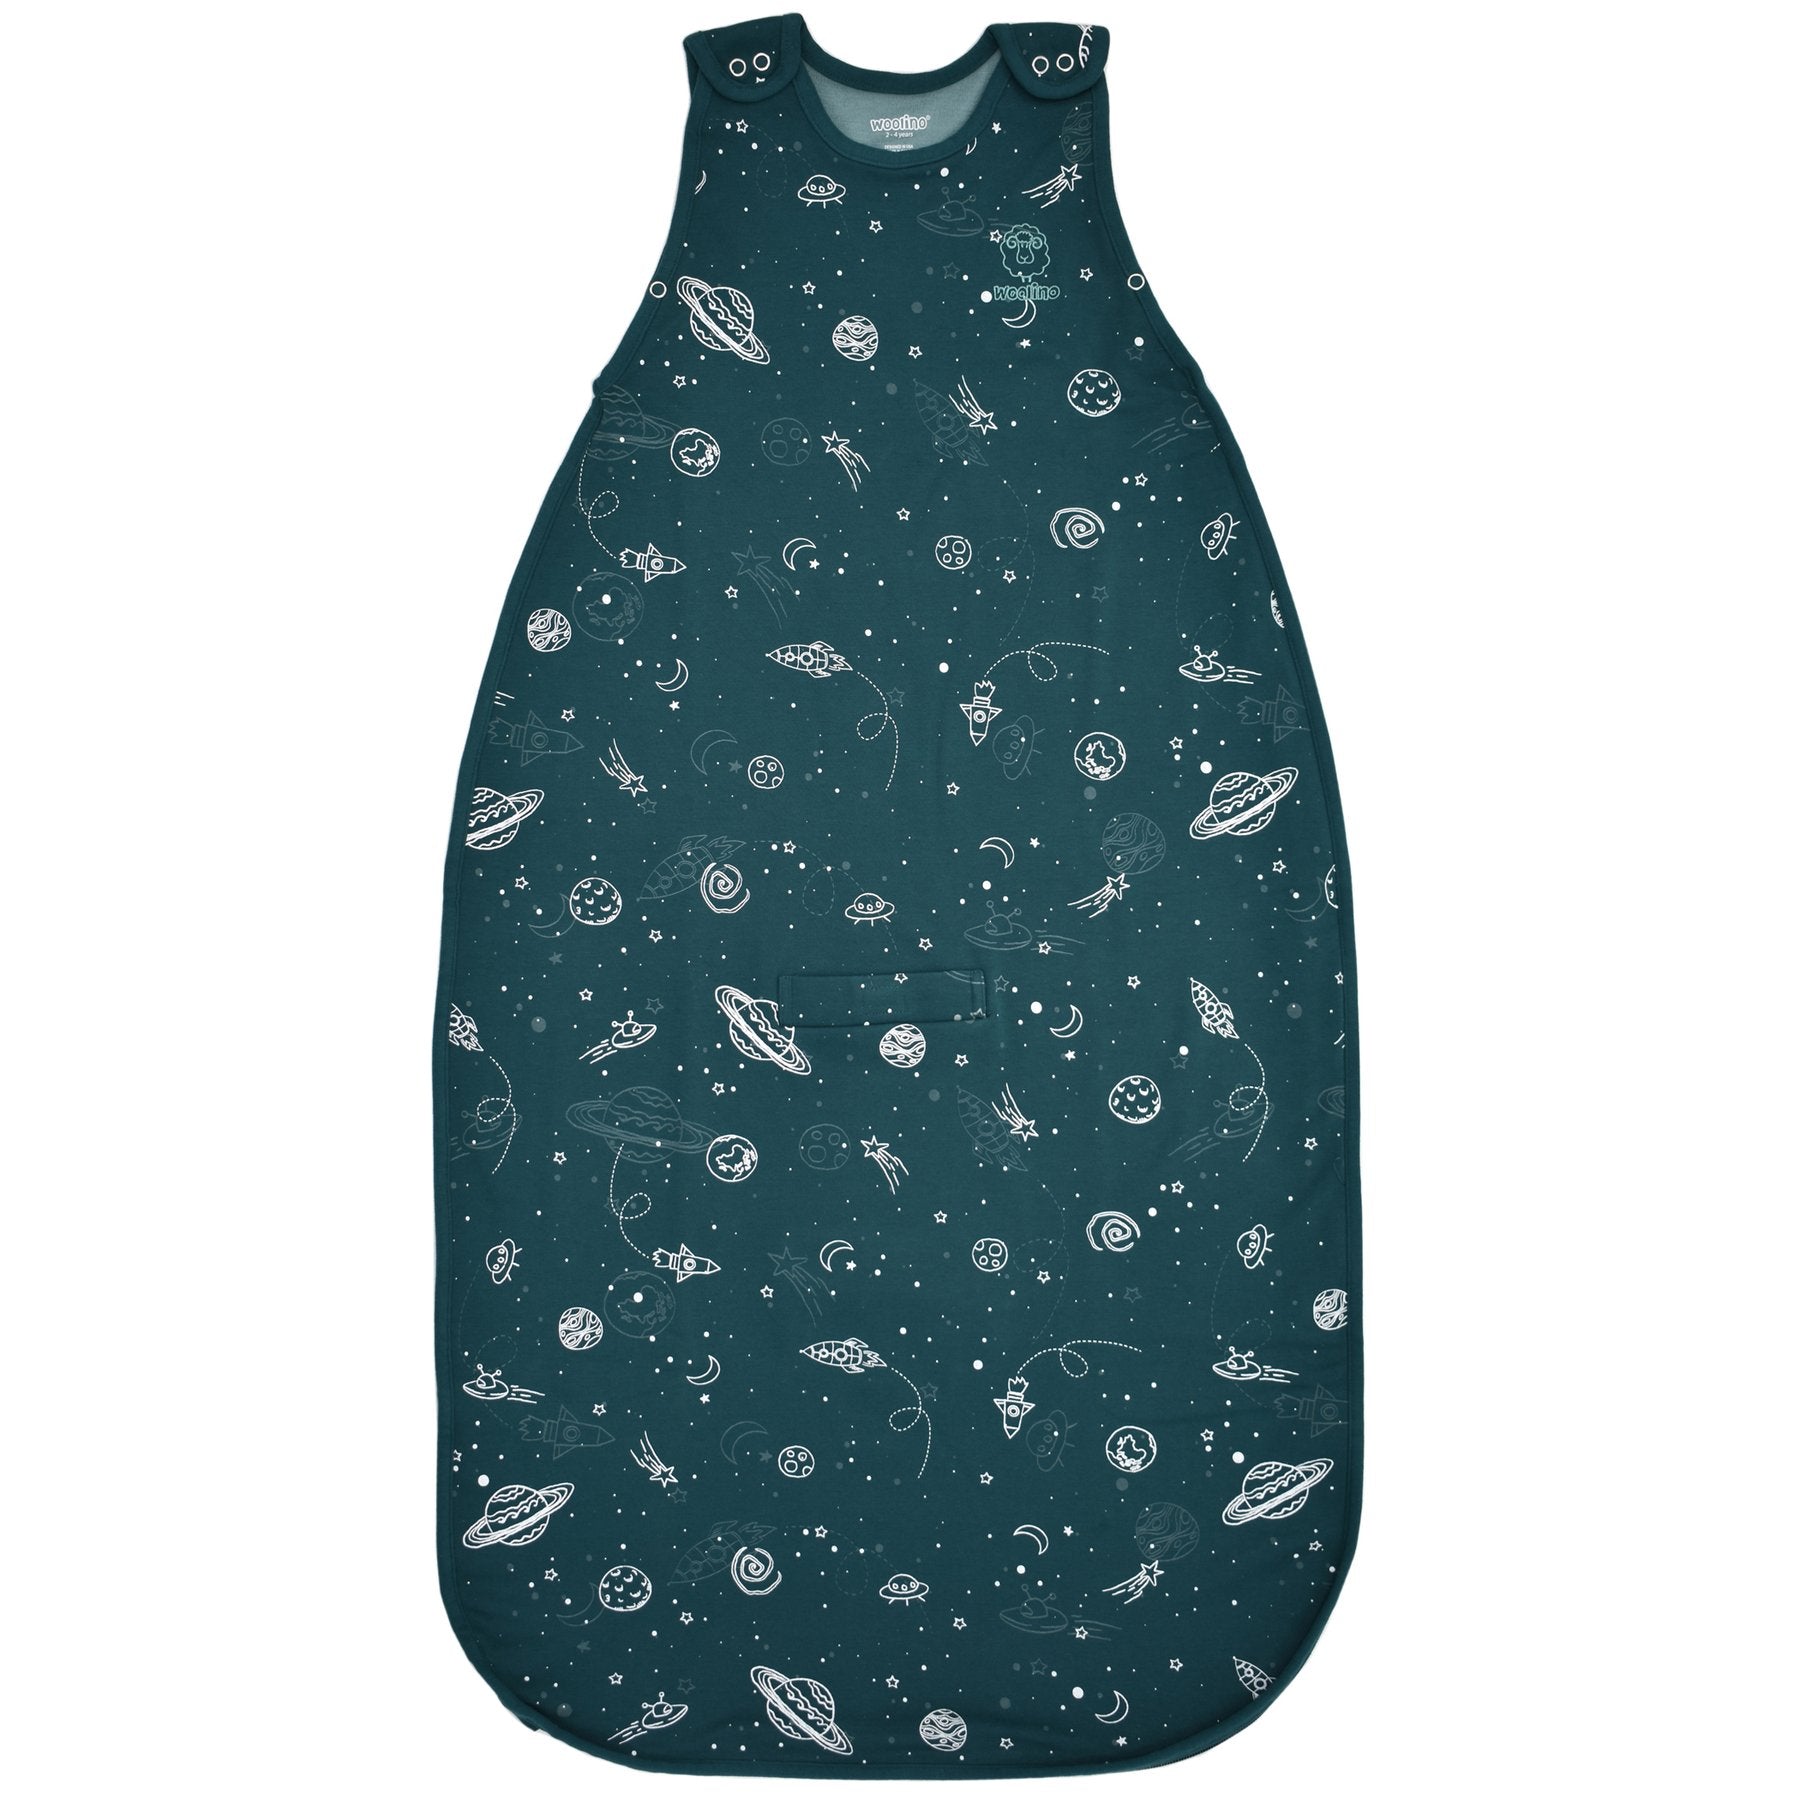 Woolino Merino Wool 4 Season Sleep Bag ULTIMATE - Space (Glow In The D –  Mom Loves Me Children Boutique